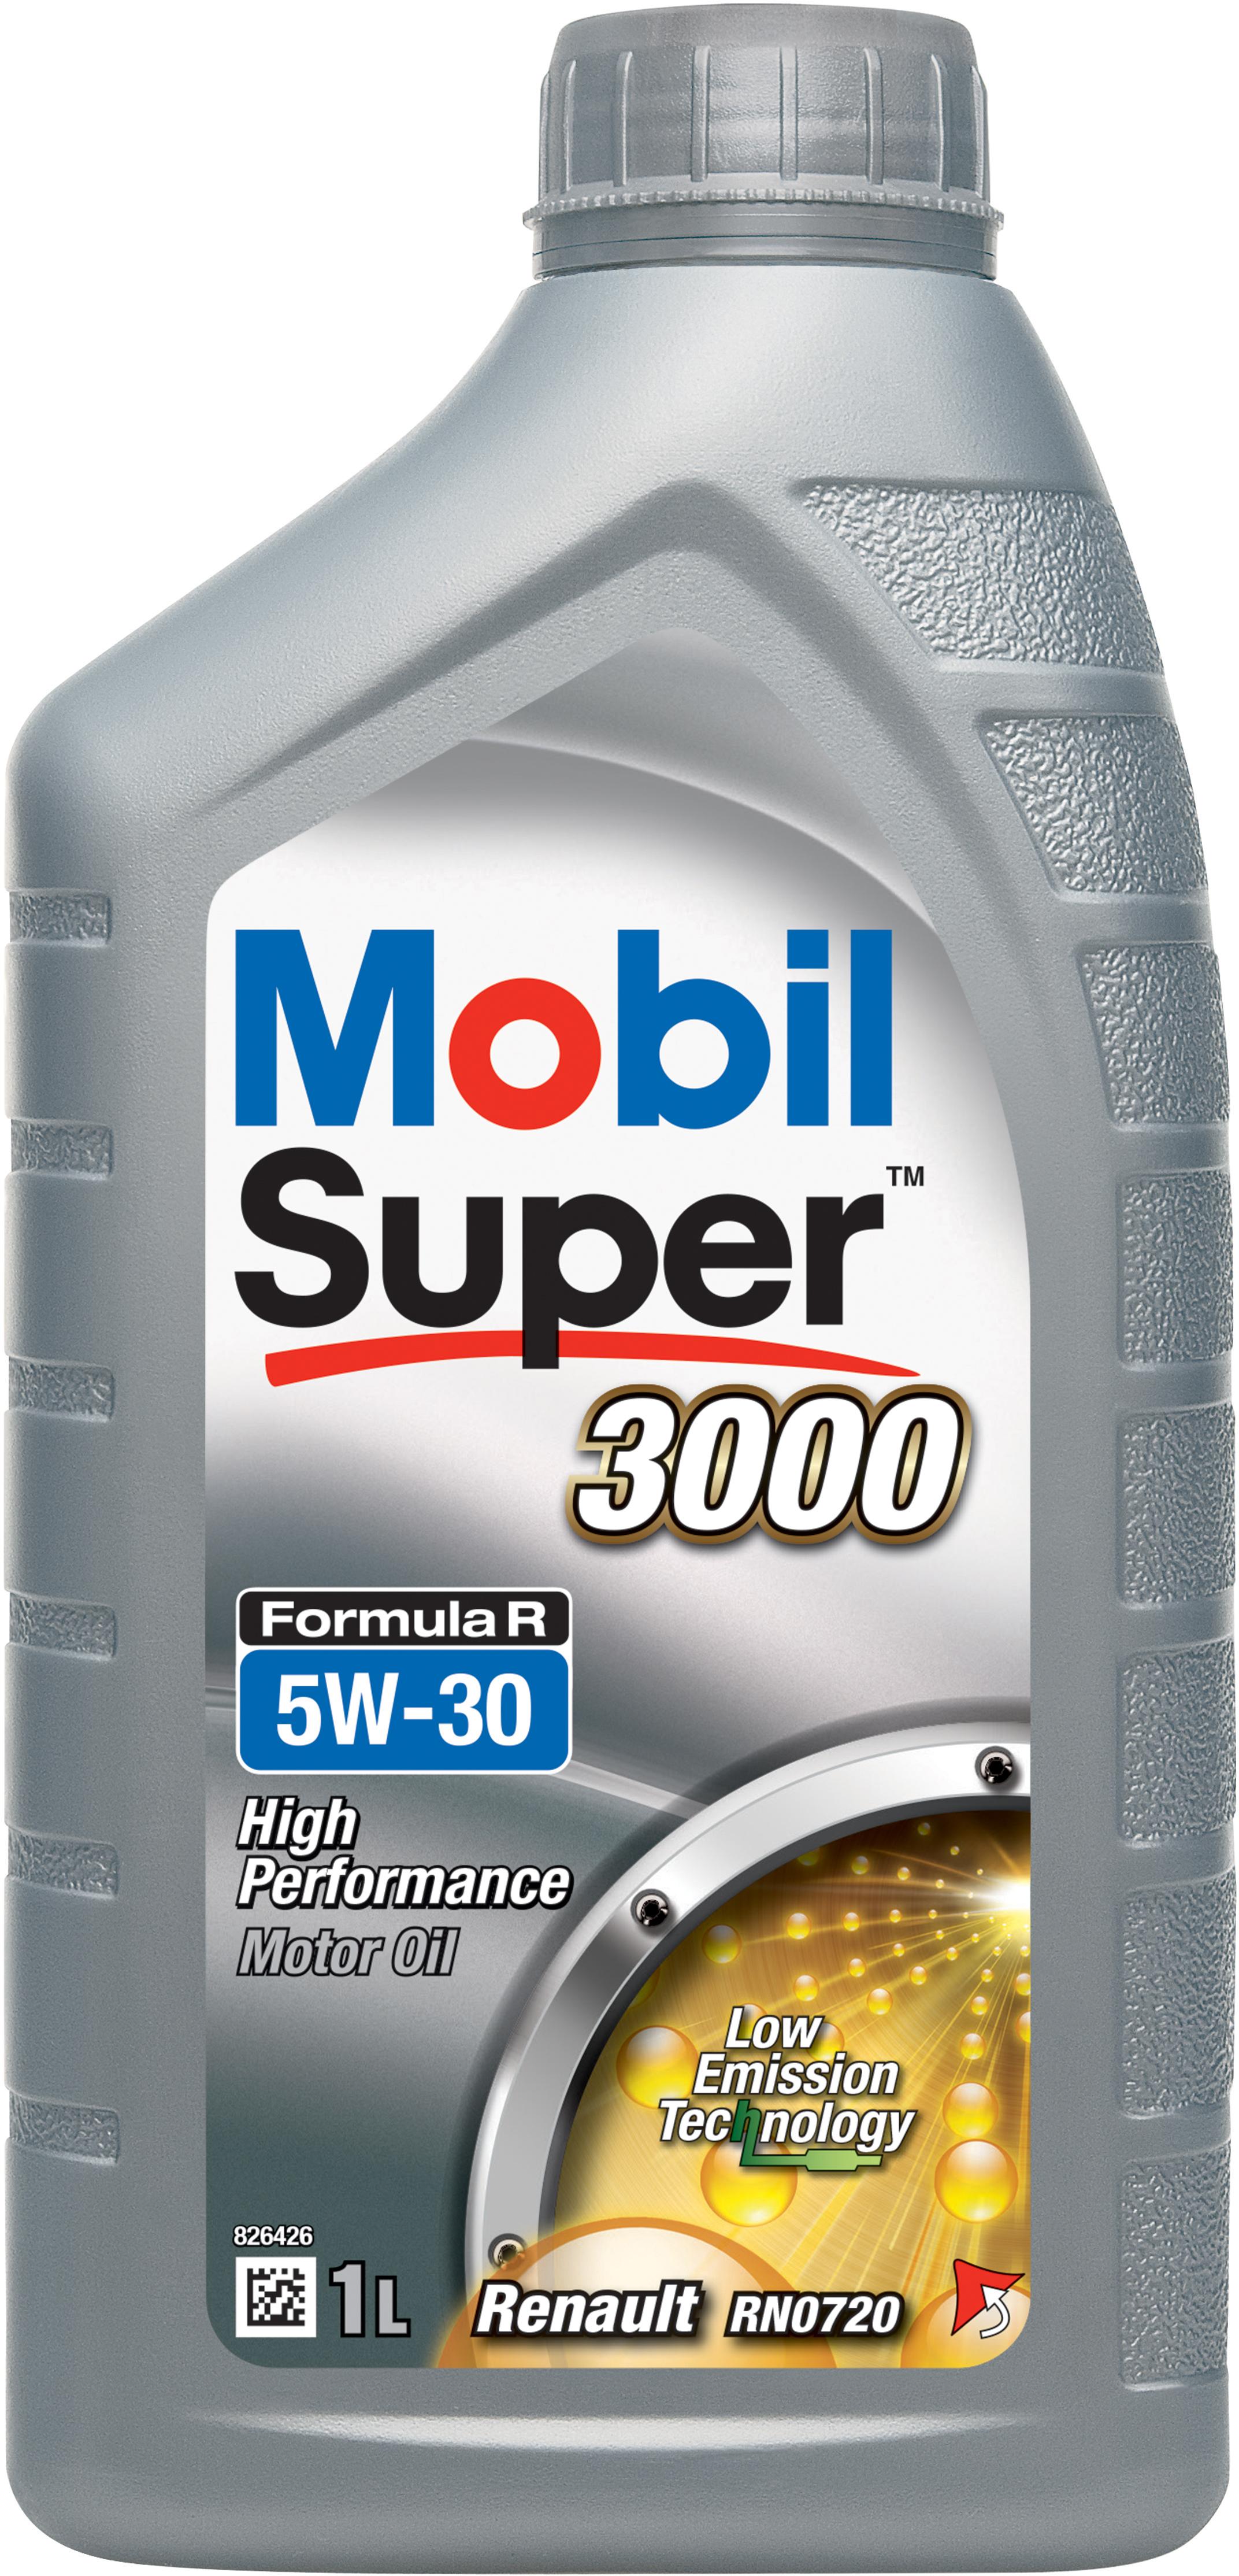 Mobil Super 3000 Formula R 12 Oil 1L